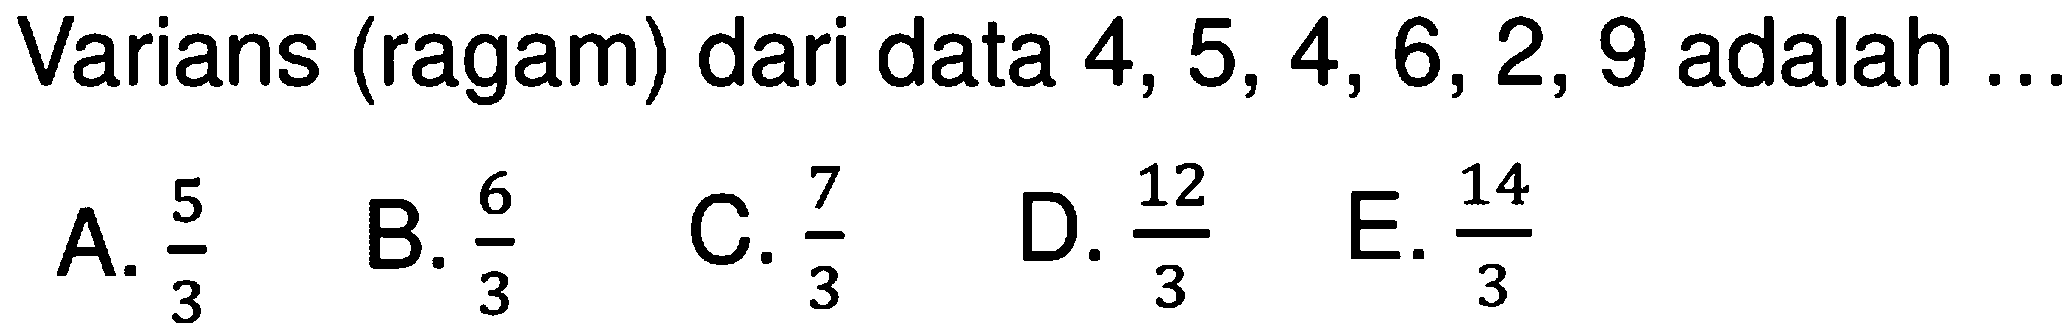 Varians (ragam) dari data 4,5,4,6,2,9 adalah ....